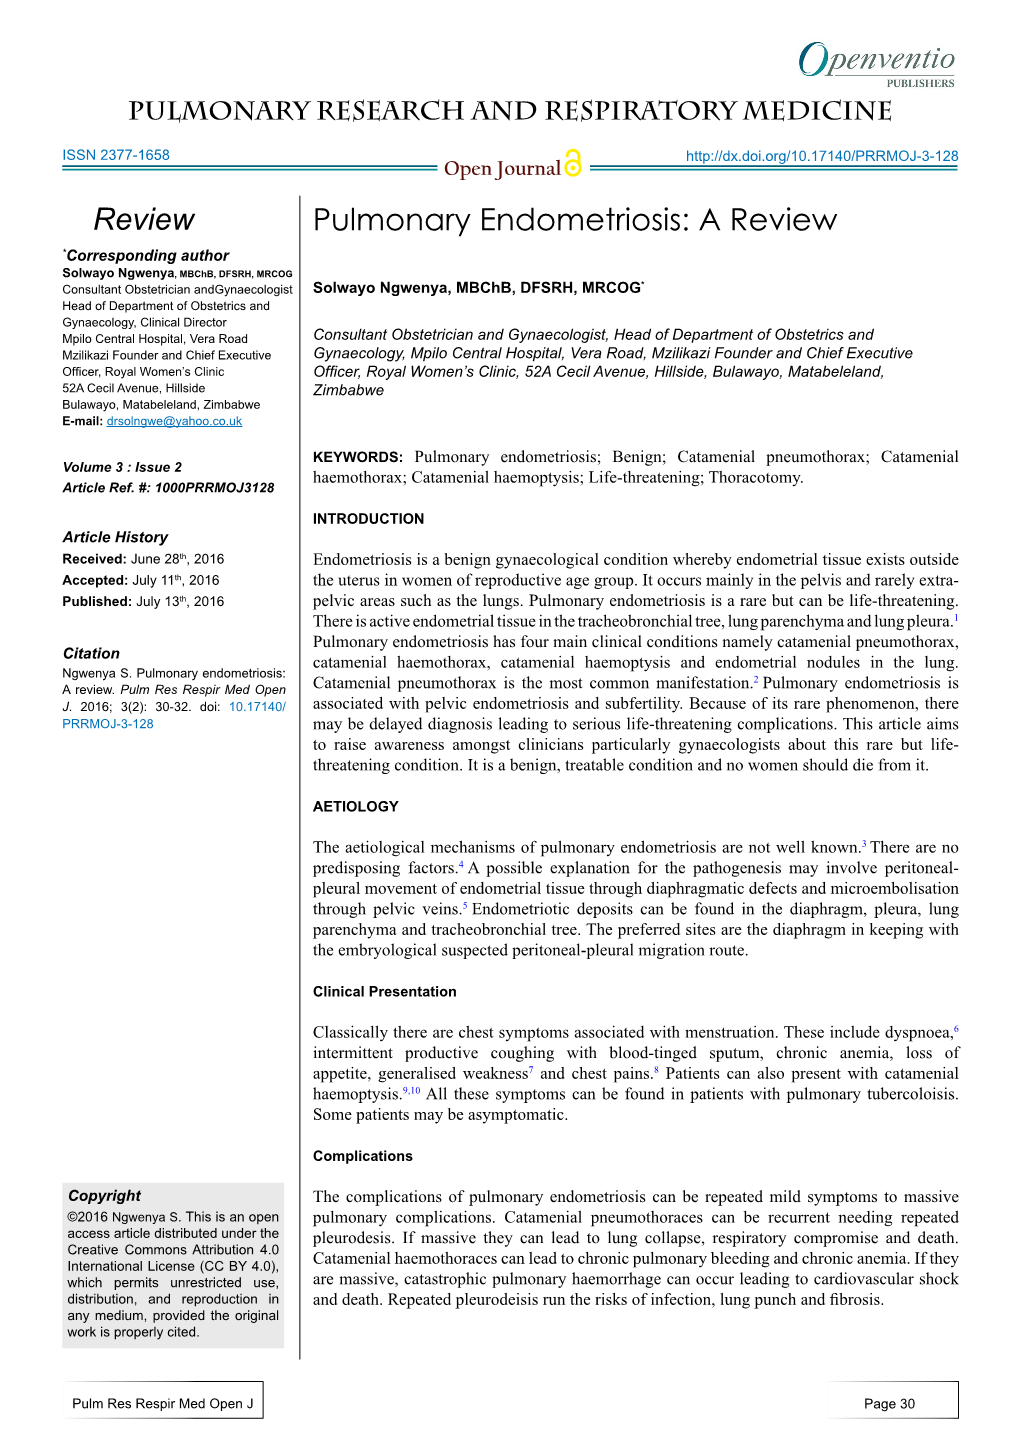 Pulmonary Endometriosis: a Review